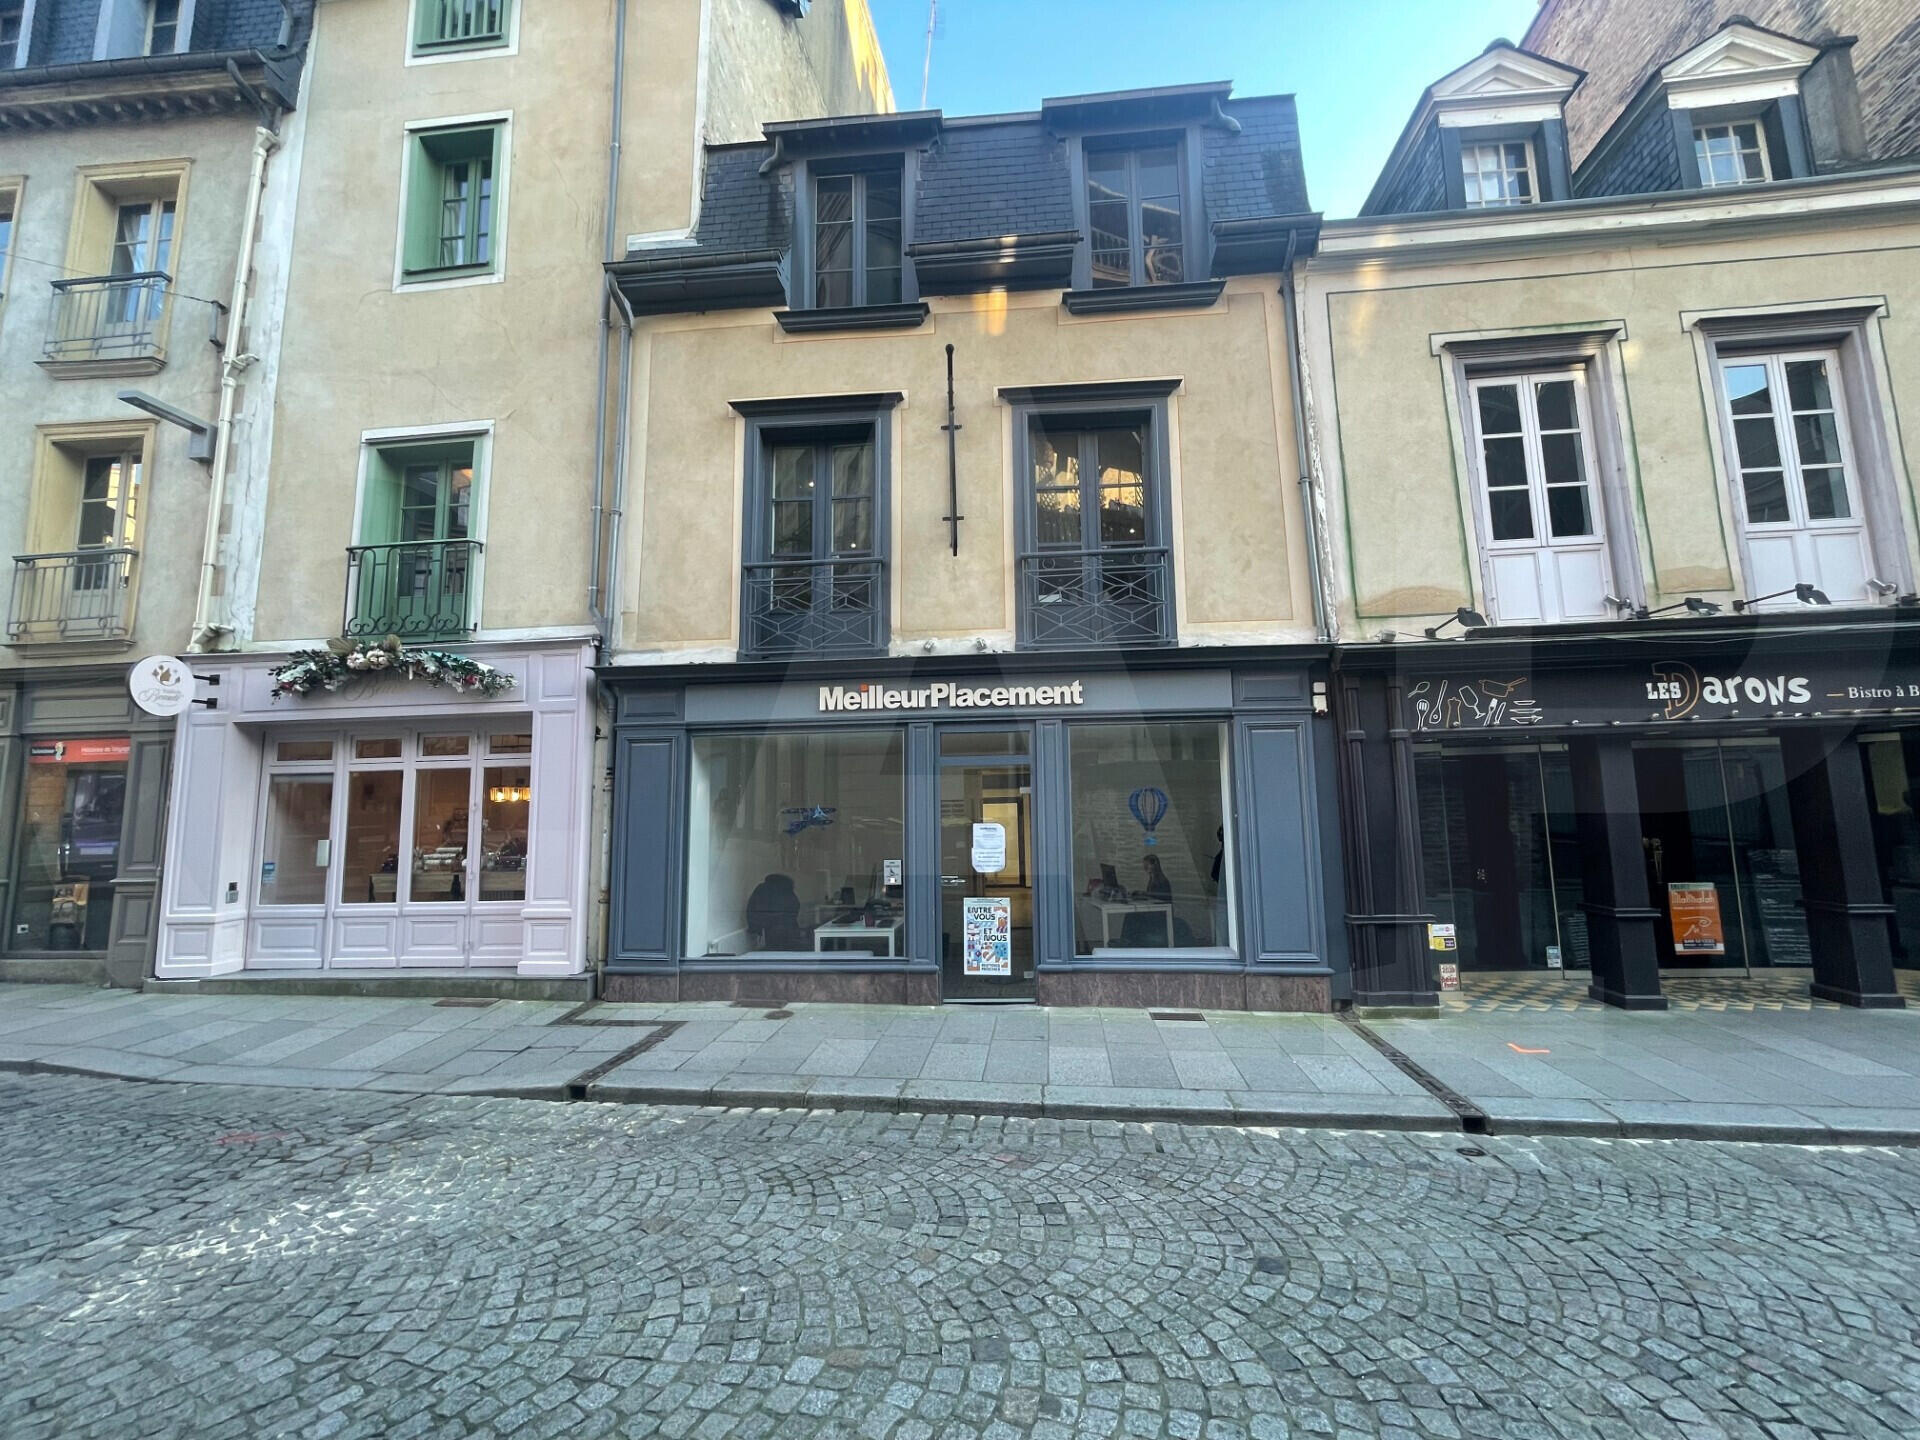 A vendre immeuble bureaux de 191m² à Rennes centre